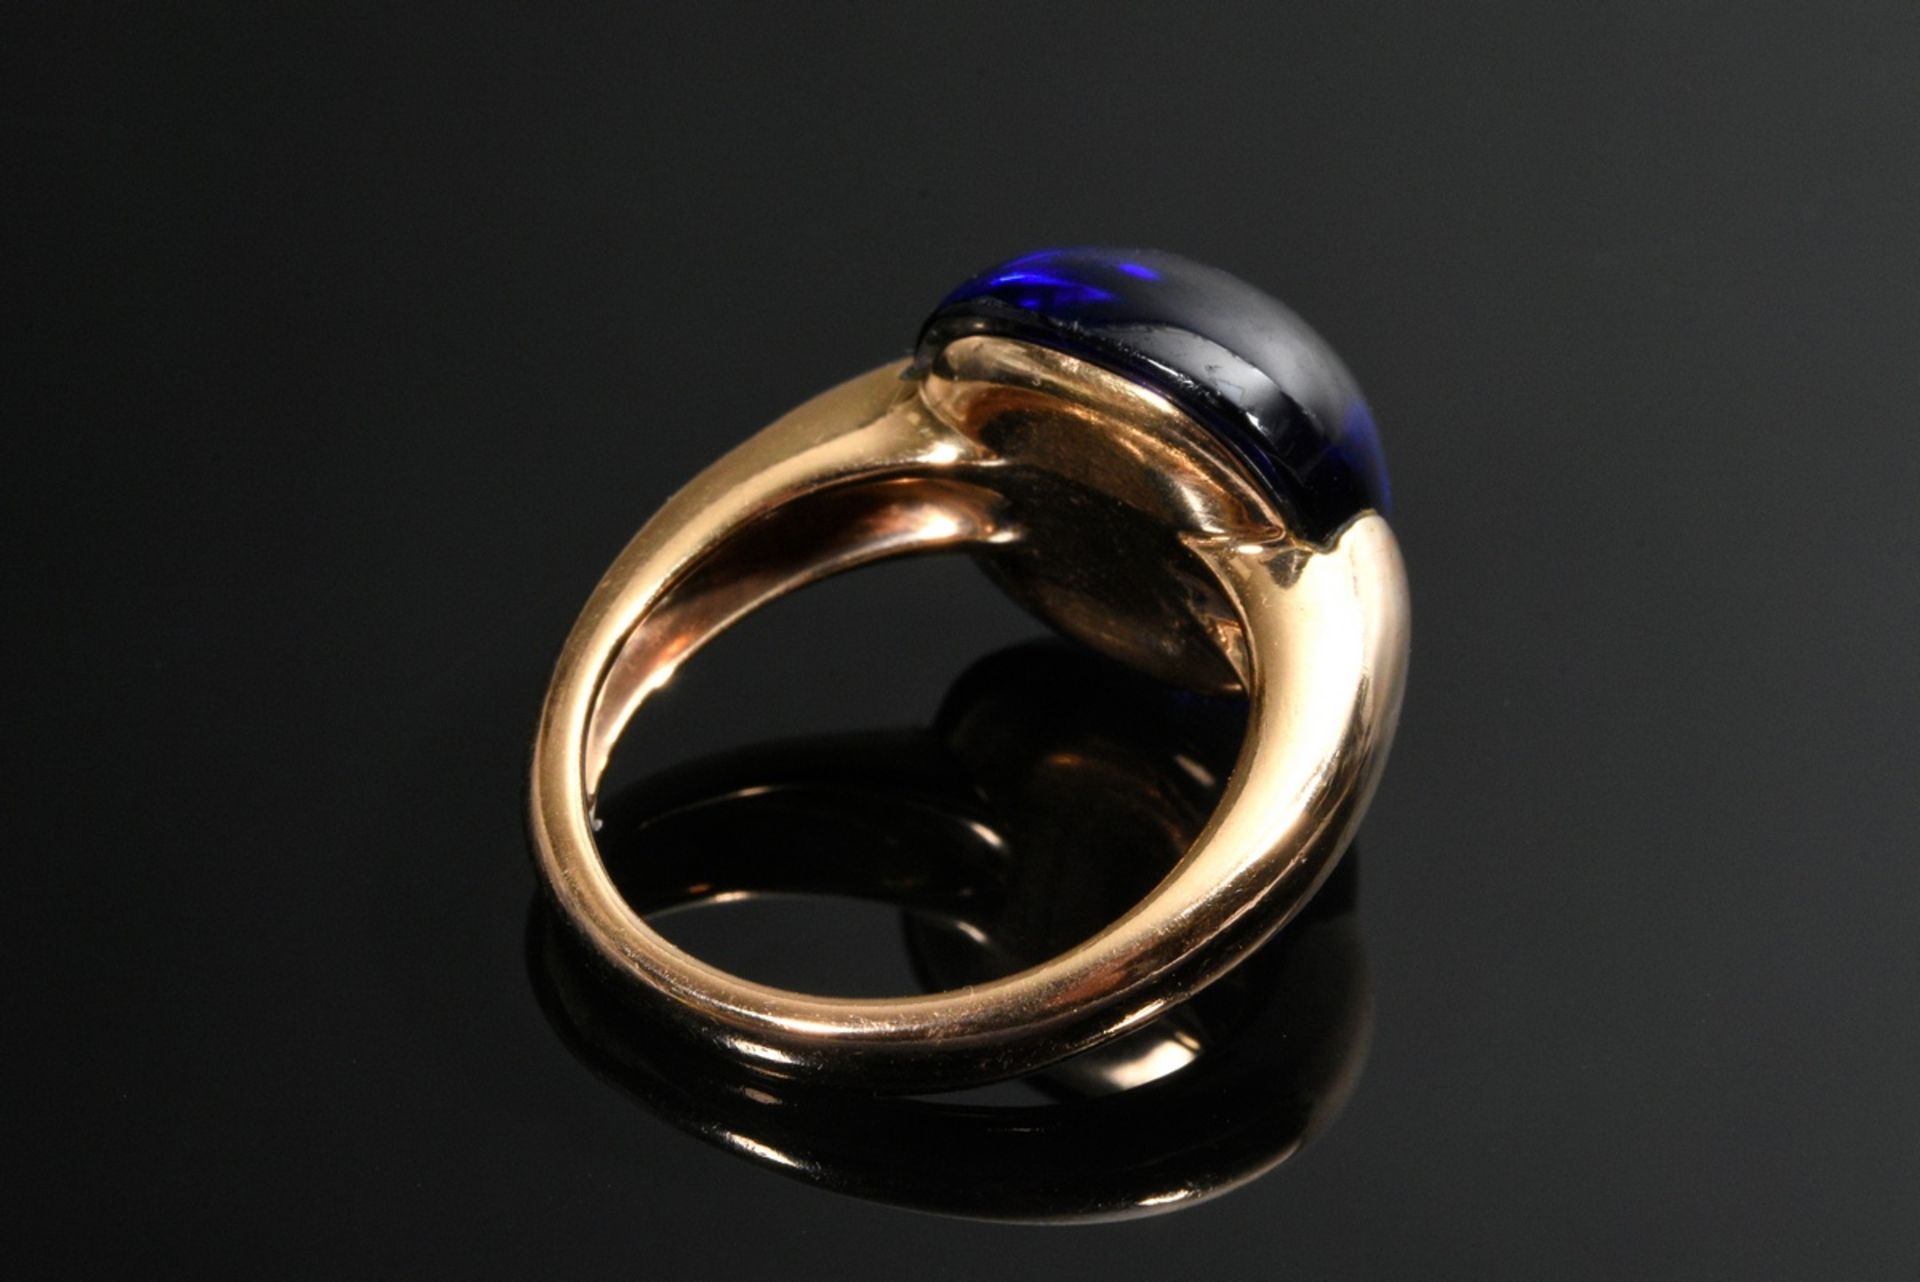 Doris Gioielli Roségold 750 Ring mit synthetischem blauem Spinell Cabochon (13,5x14mm), sign., 9,4g - Bild 4 aus 4